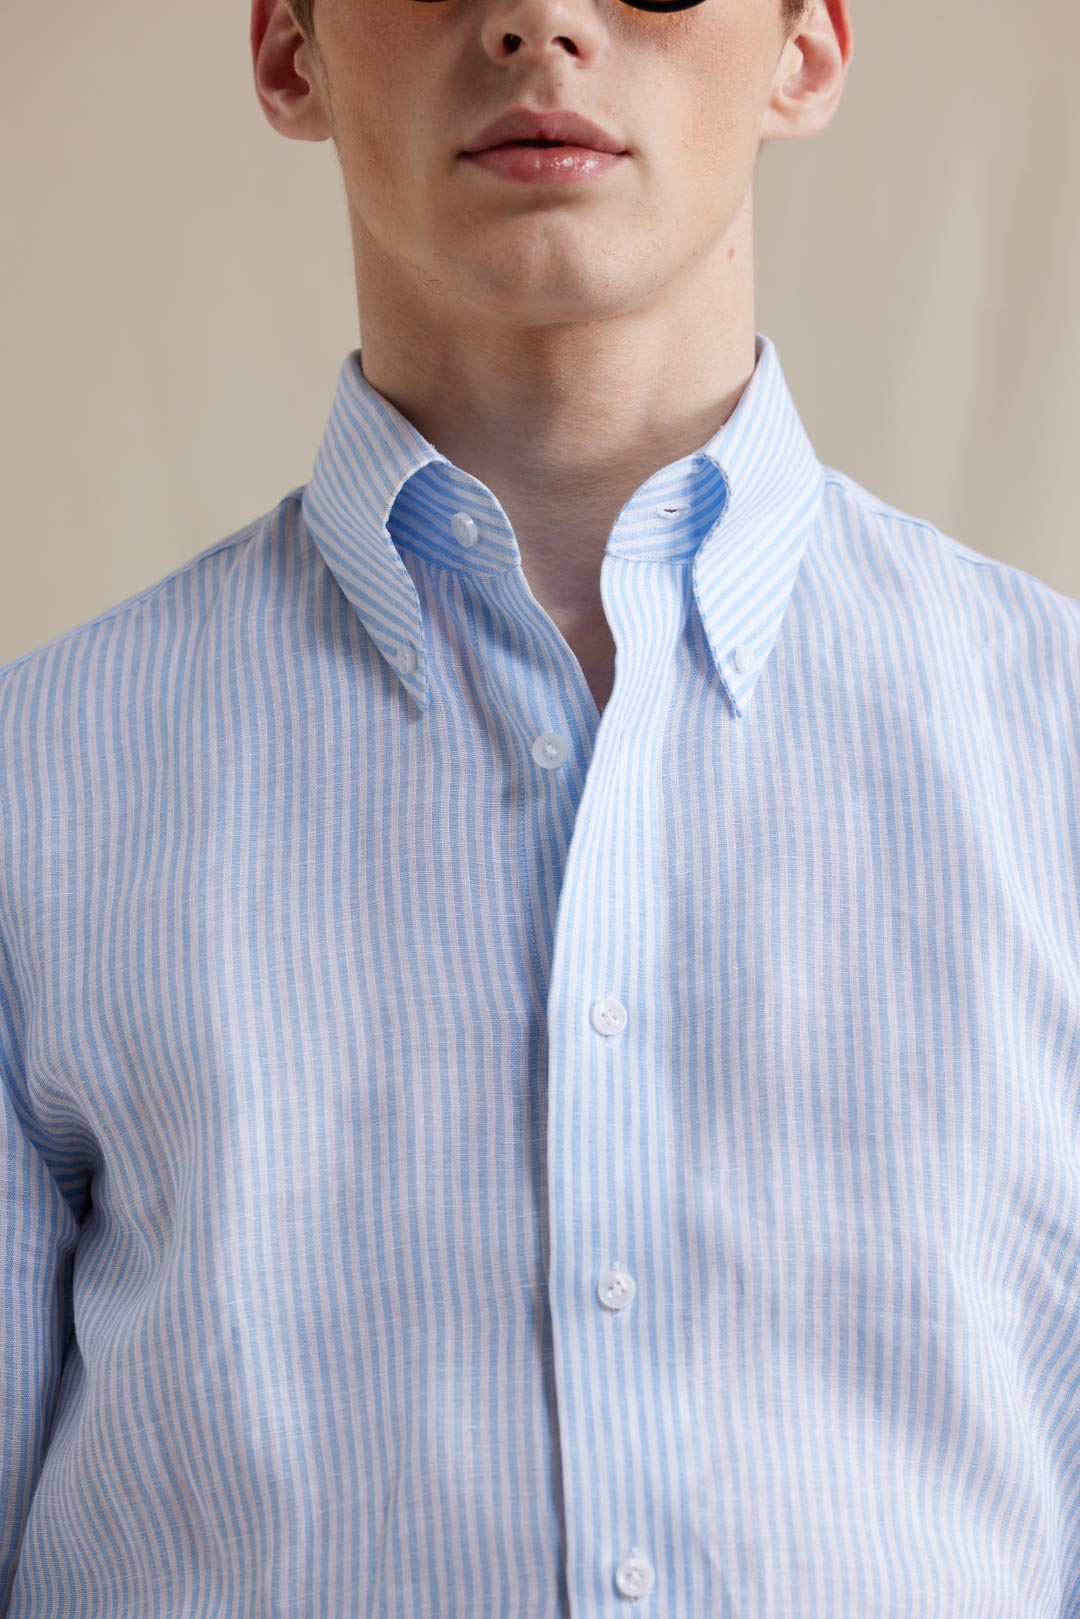 Button Down Linen Shirt - Light Blue Bengal Stripes